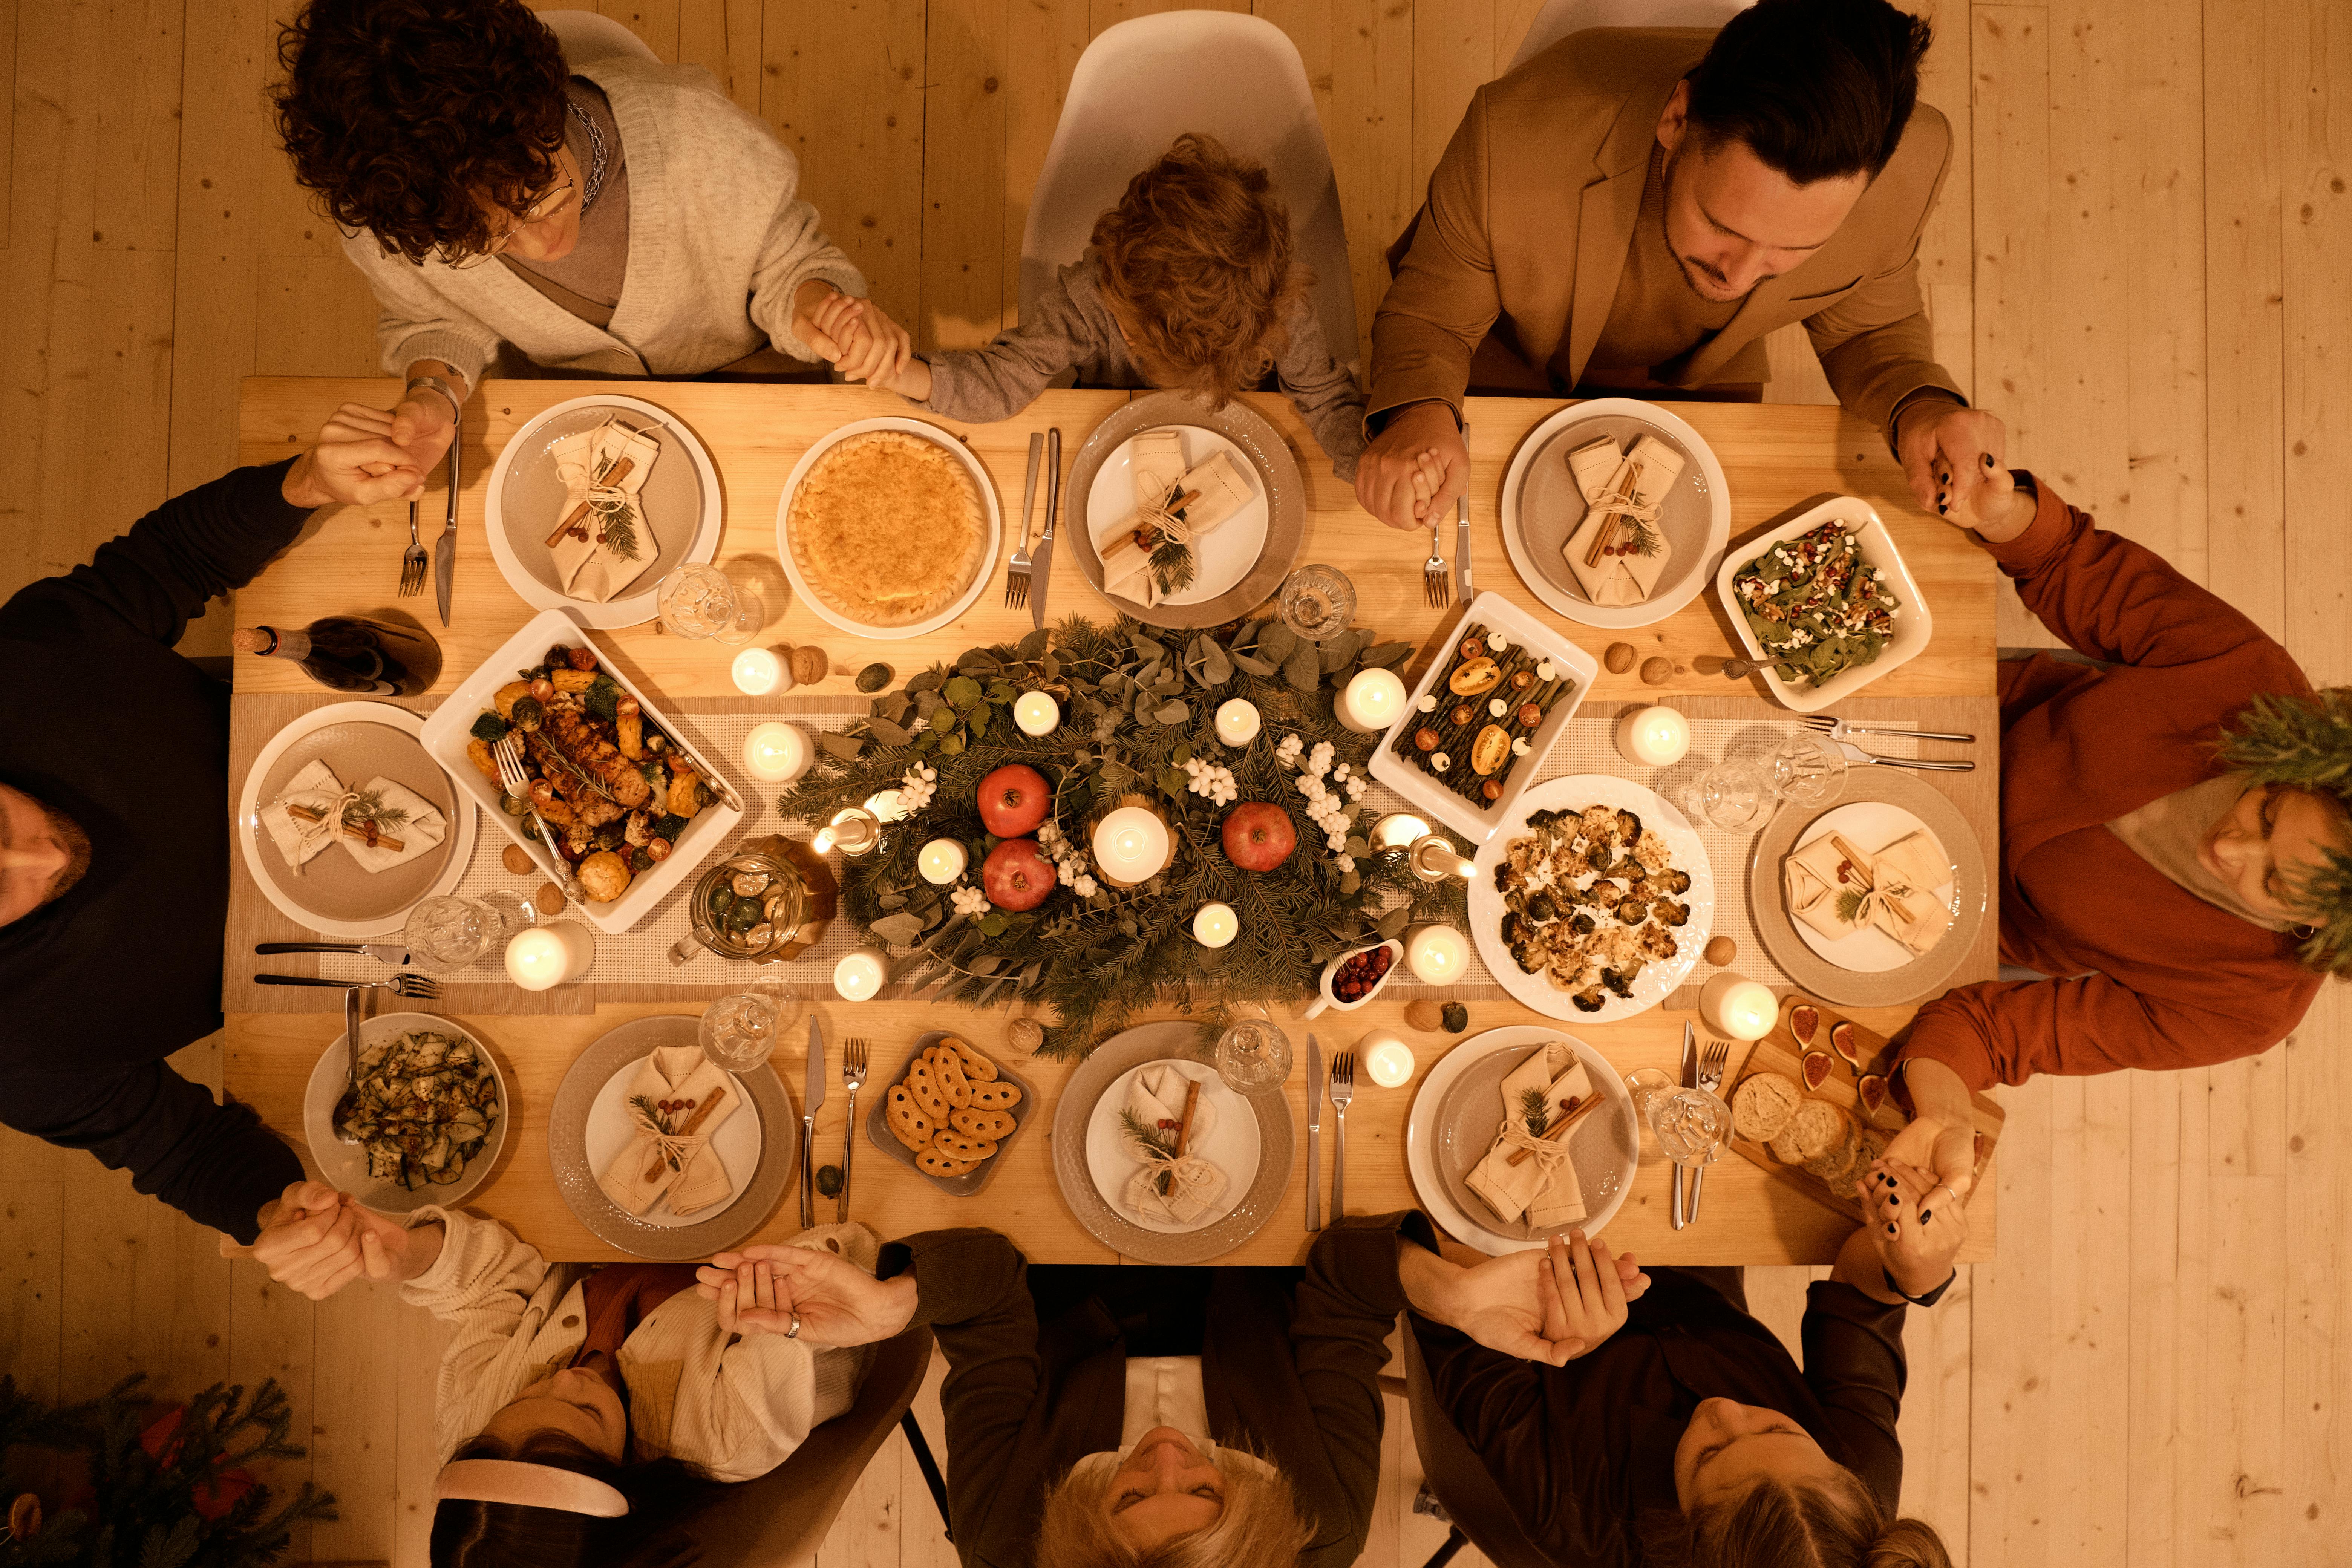 Family having dinner | Source: Pexels